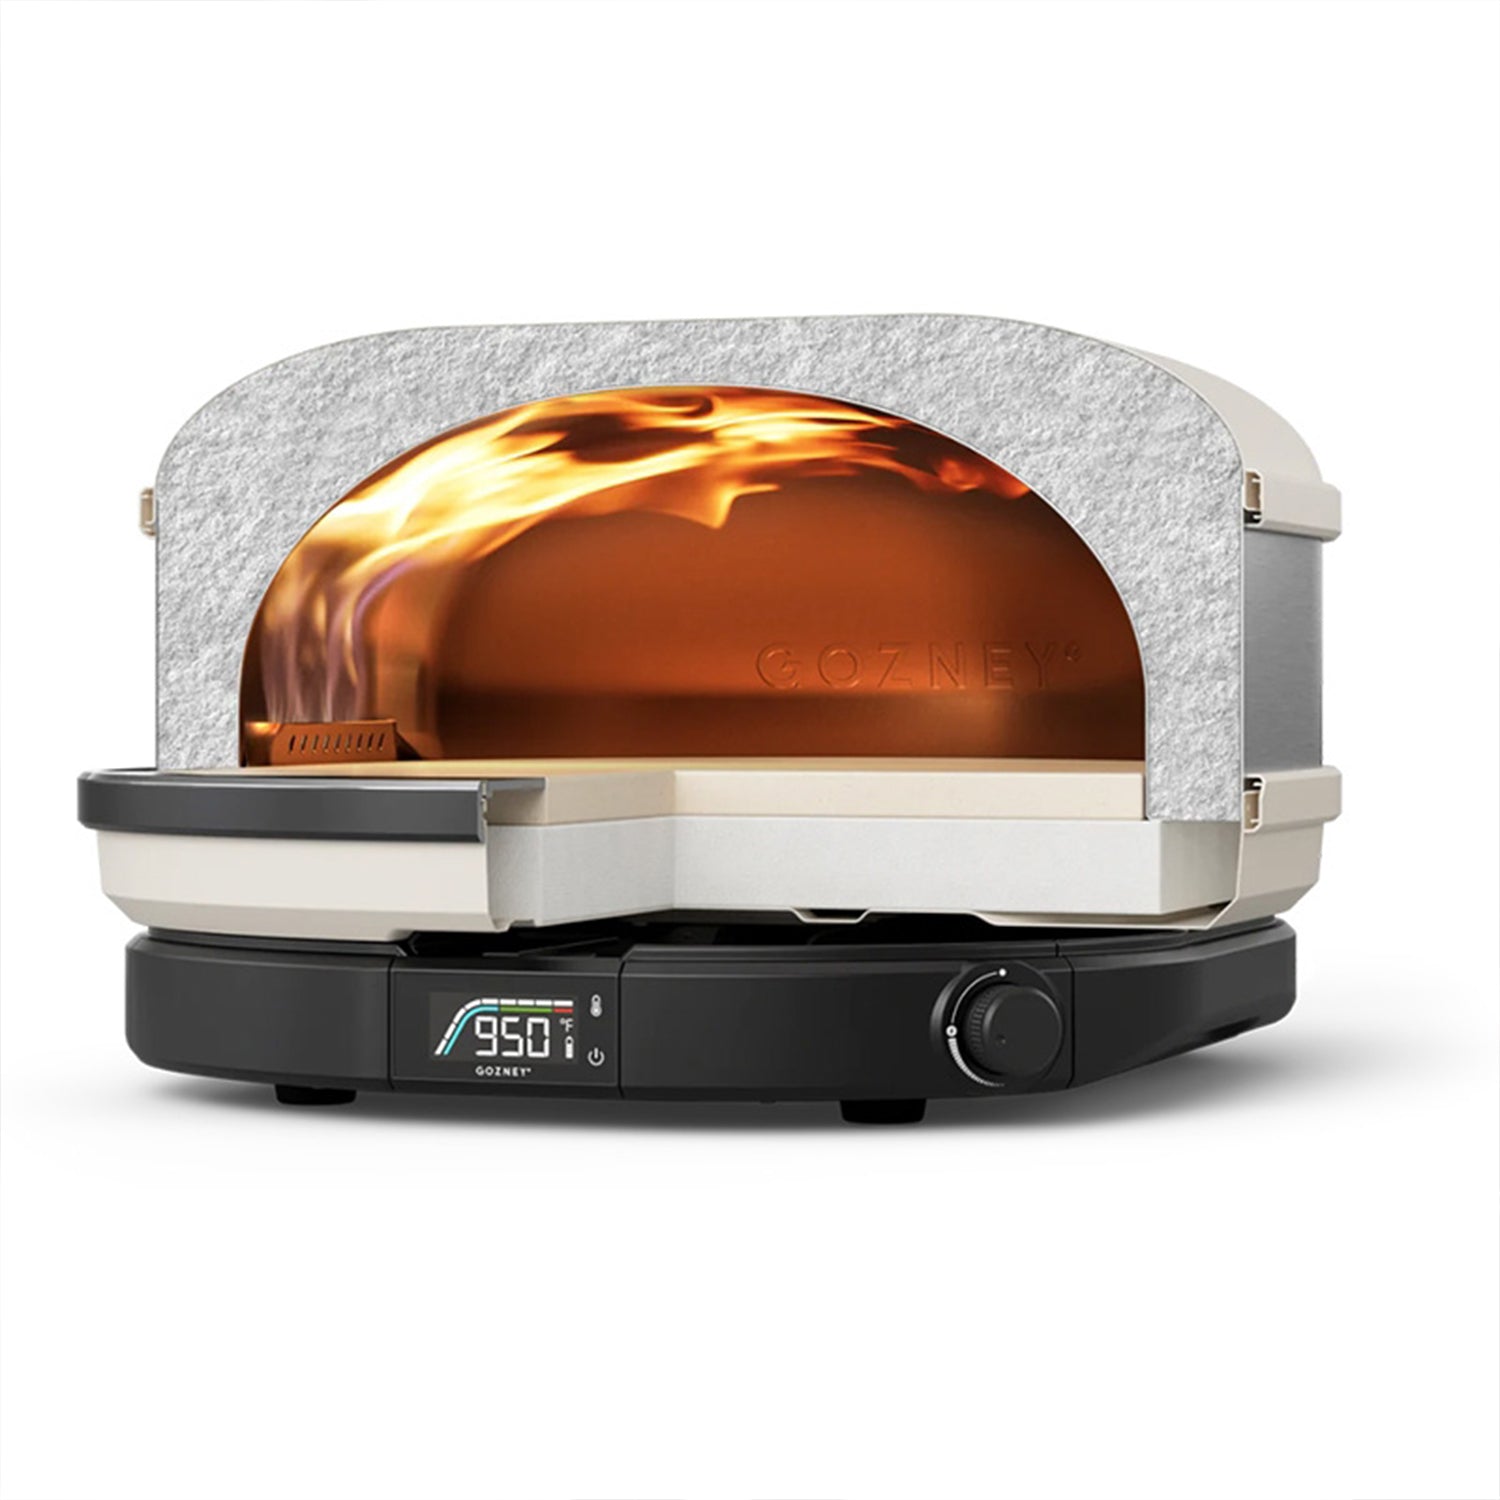 Gozney Arc Propane Gas Compact Outdoor Pizza Oven Cooks 14" Pizza Bone White